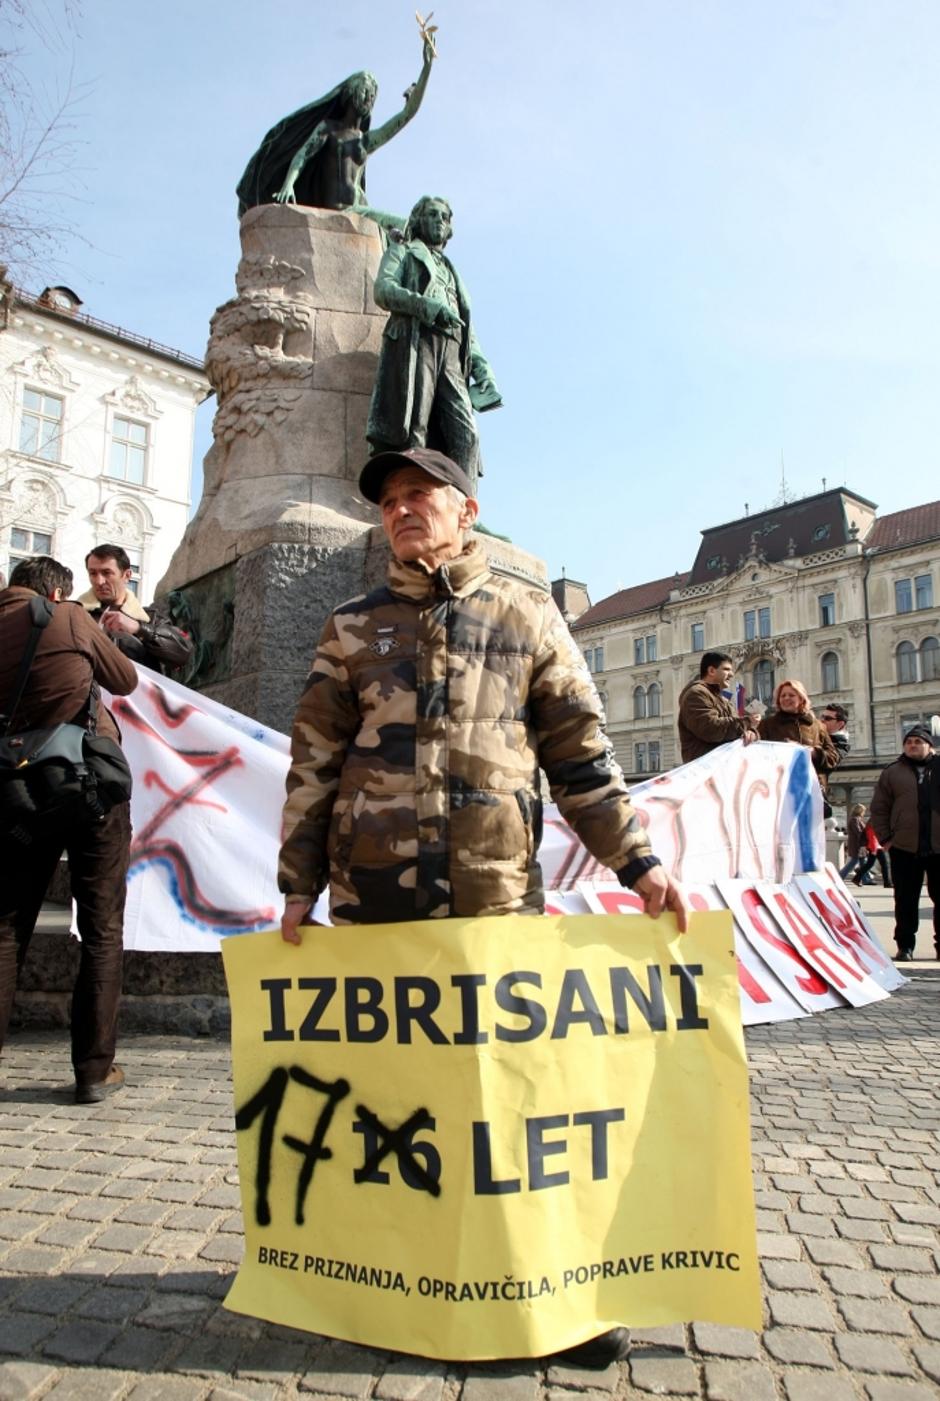 ljubljana26.02.09, Manifestacija ob 17. obletnici izbrisa, izbrisani, presernov  | Avtor: Nik Rovan